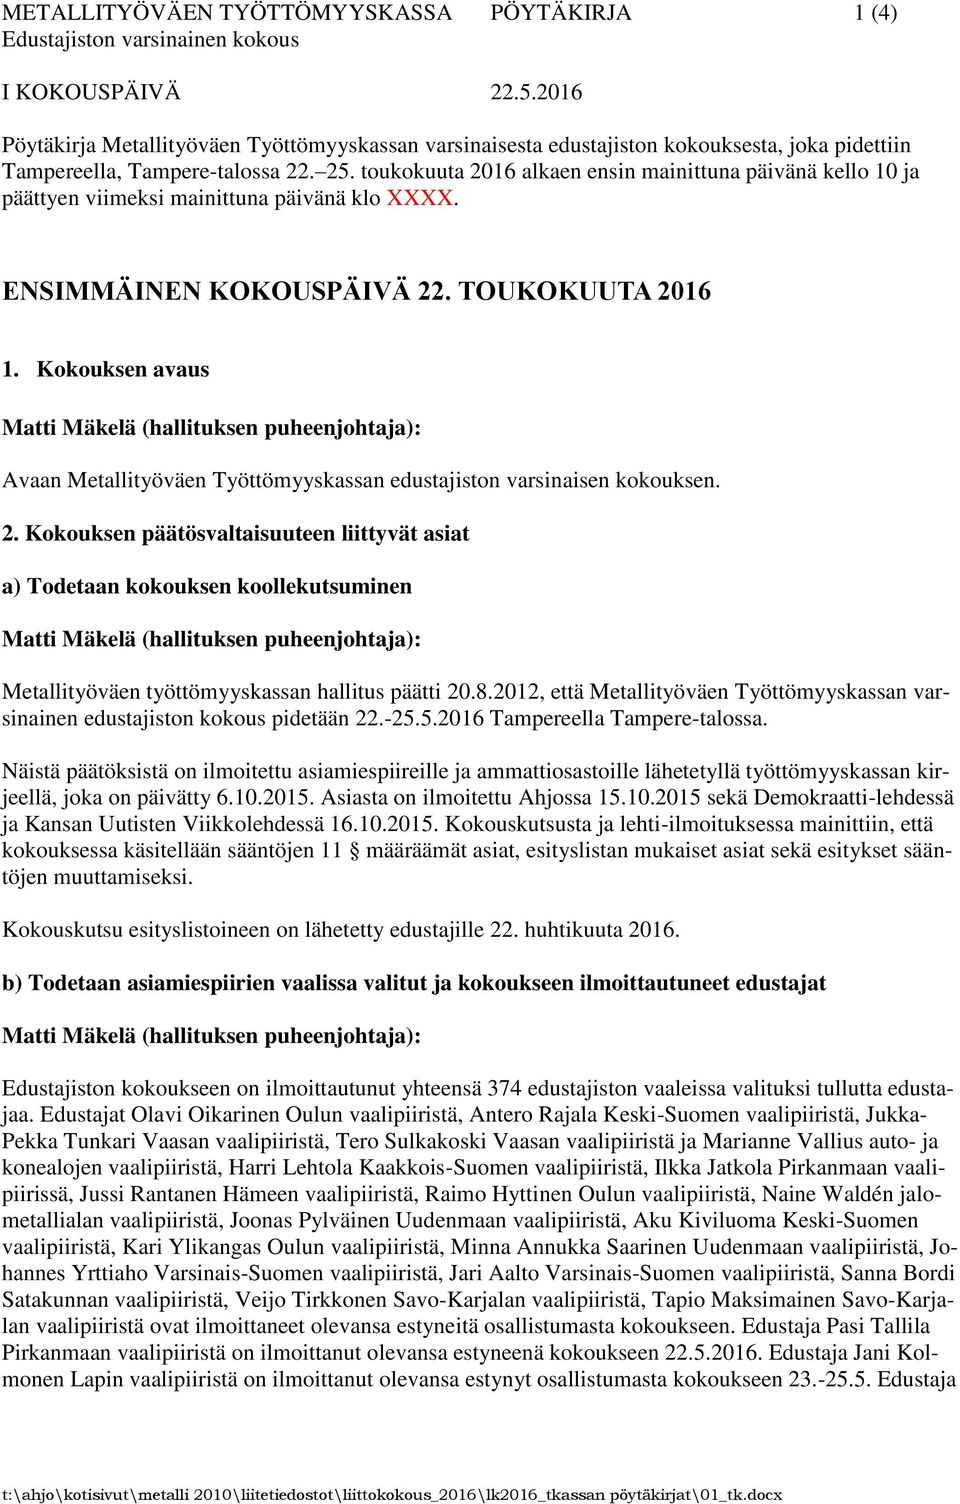 Kokouksen avaus Avaan Metallityöväen Työttömyyskassan edustajiston varsinaisen kokouksen. 2.